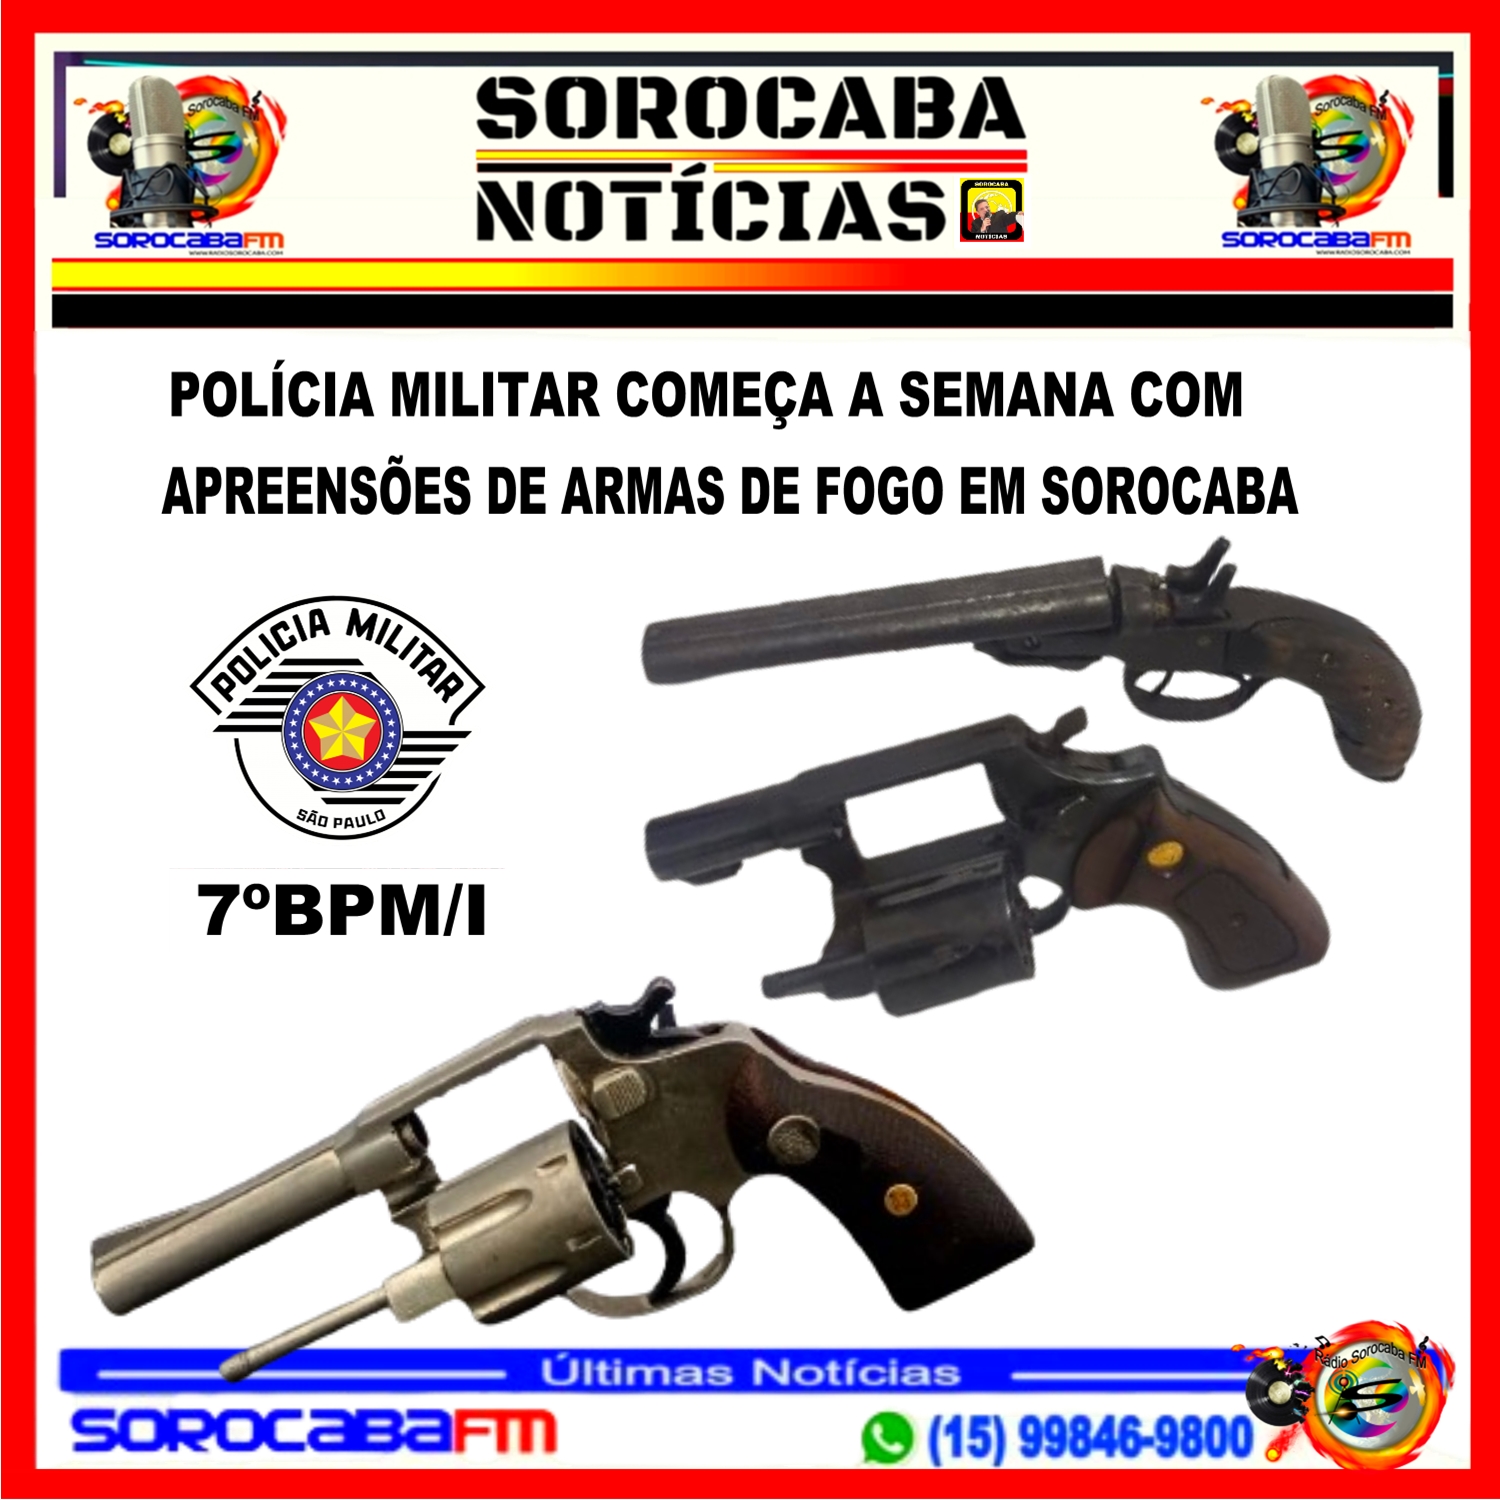 POLÍCIA MILITAR COMEÇA A SEMANA COM APREENSÕES DE ARMAS DE FOGO EM SOROCABA